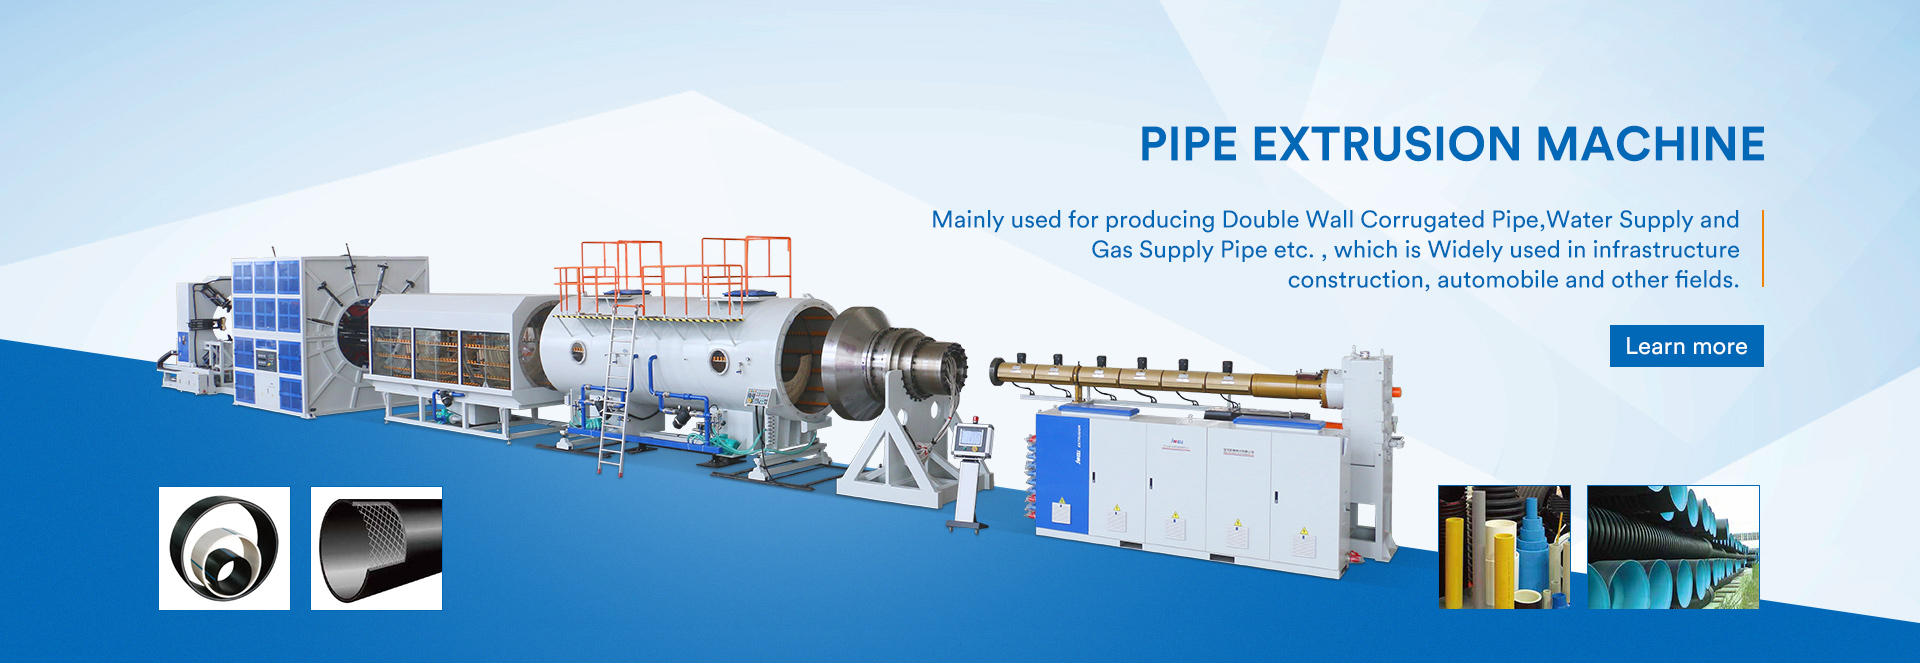 pipe Extrusion Machine